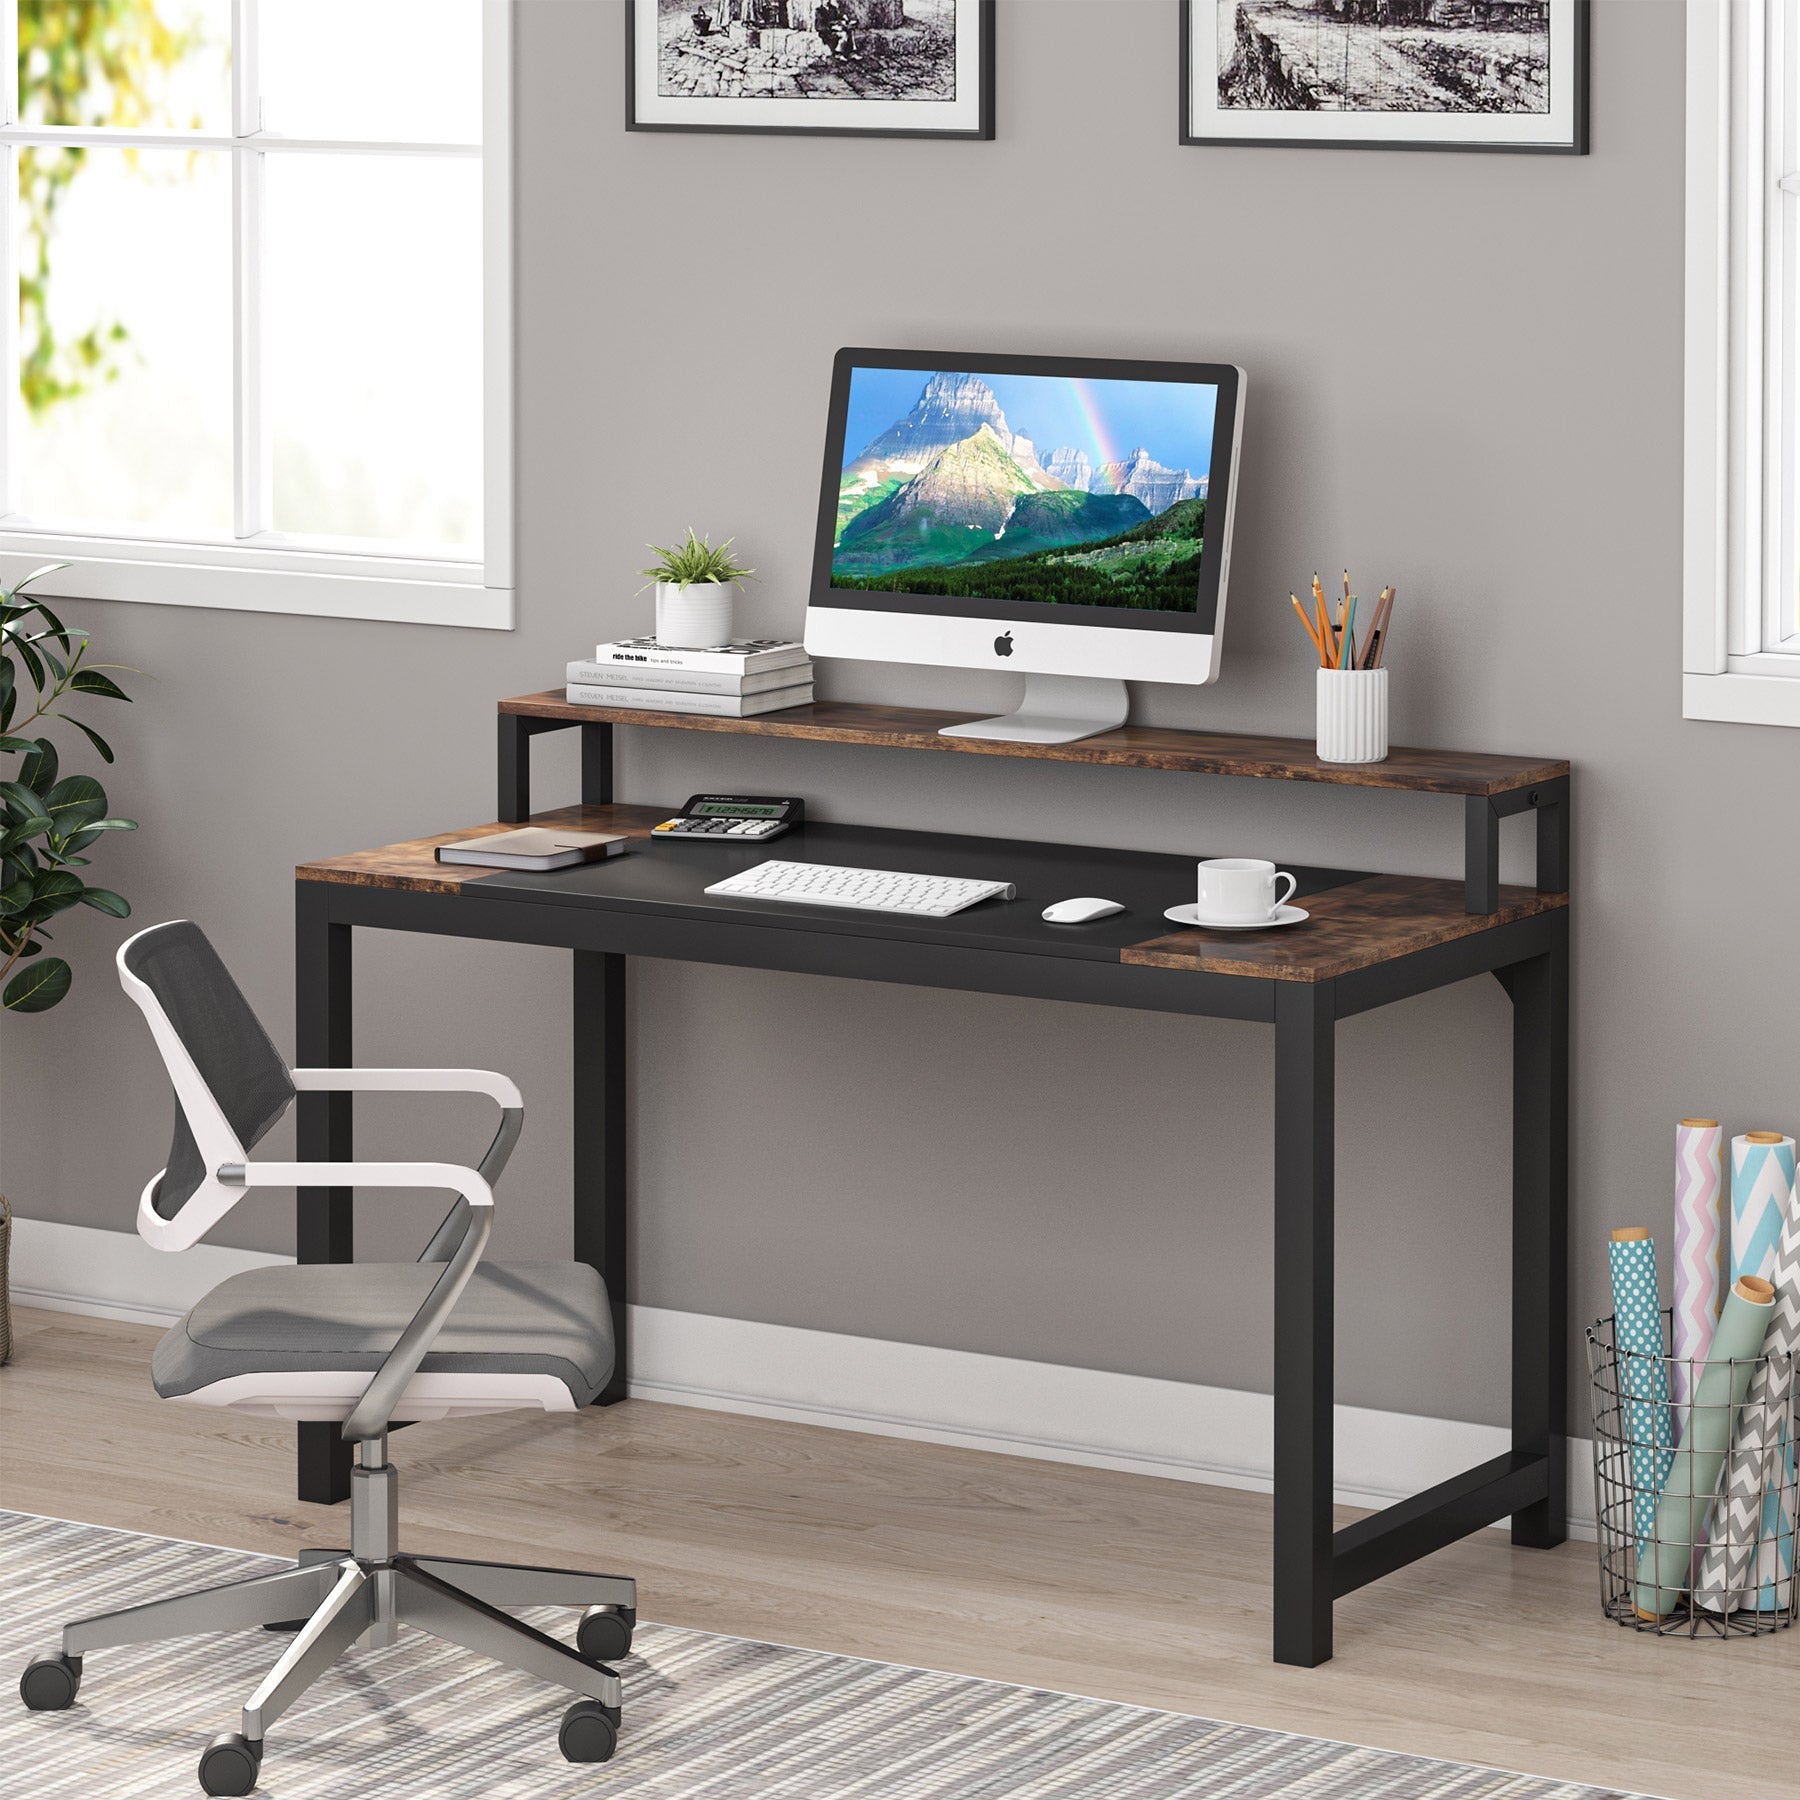  Computertisch mit Monitorständer, schreibtisch, Bürotisch PC Tisch Officetisch